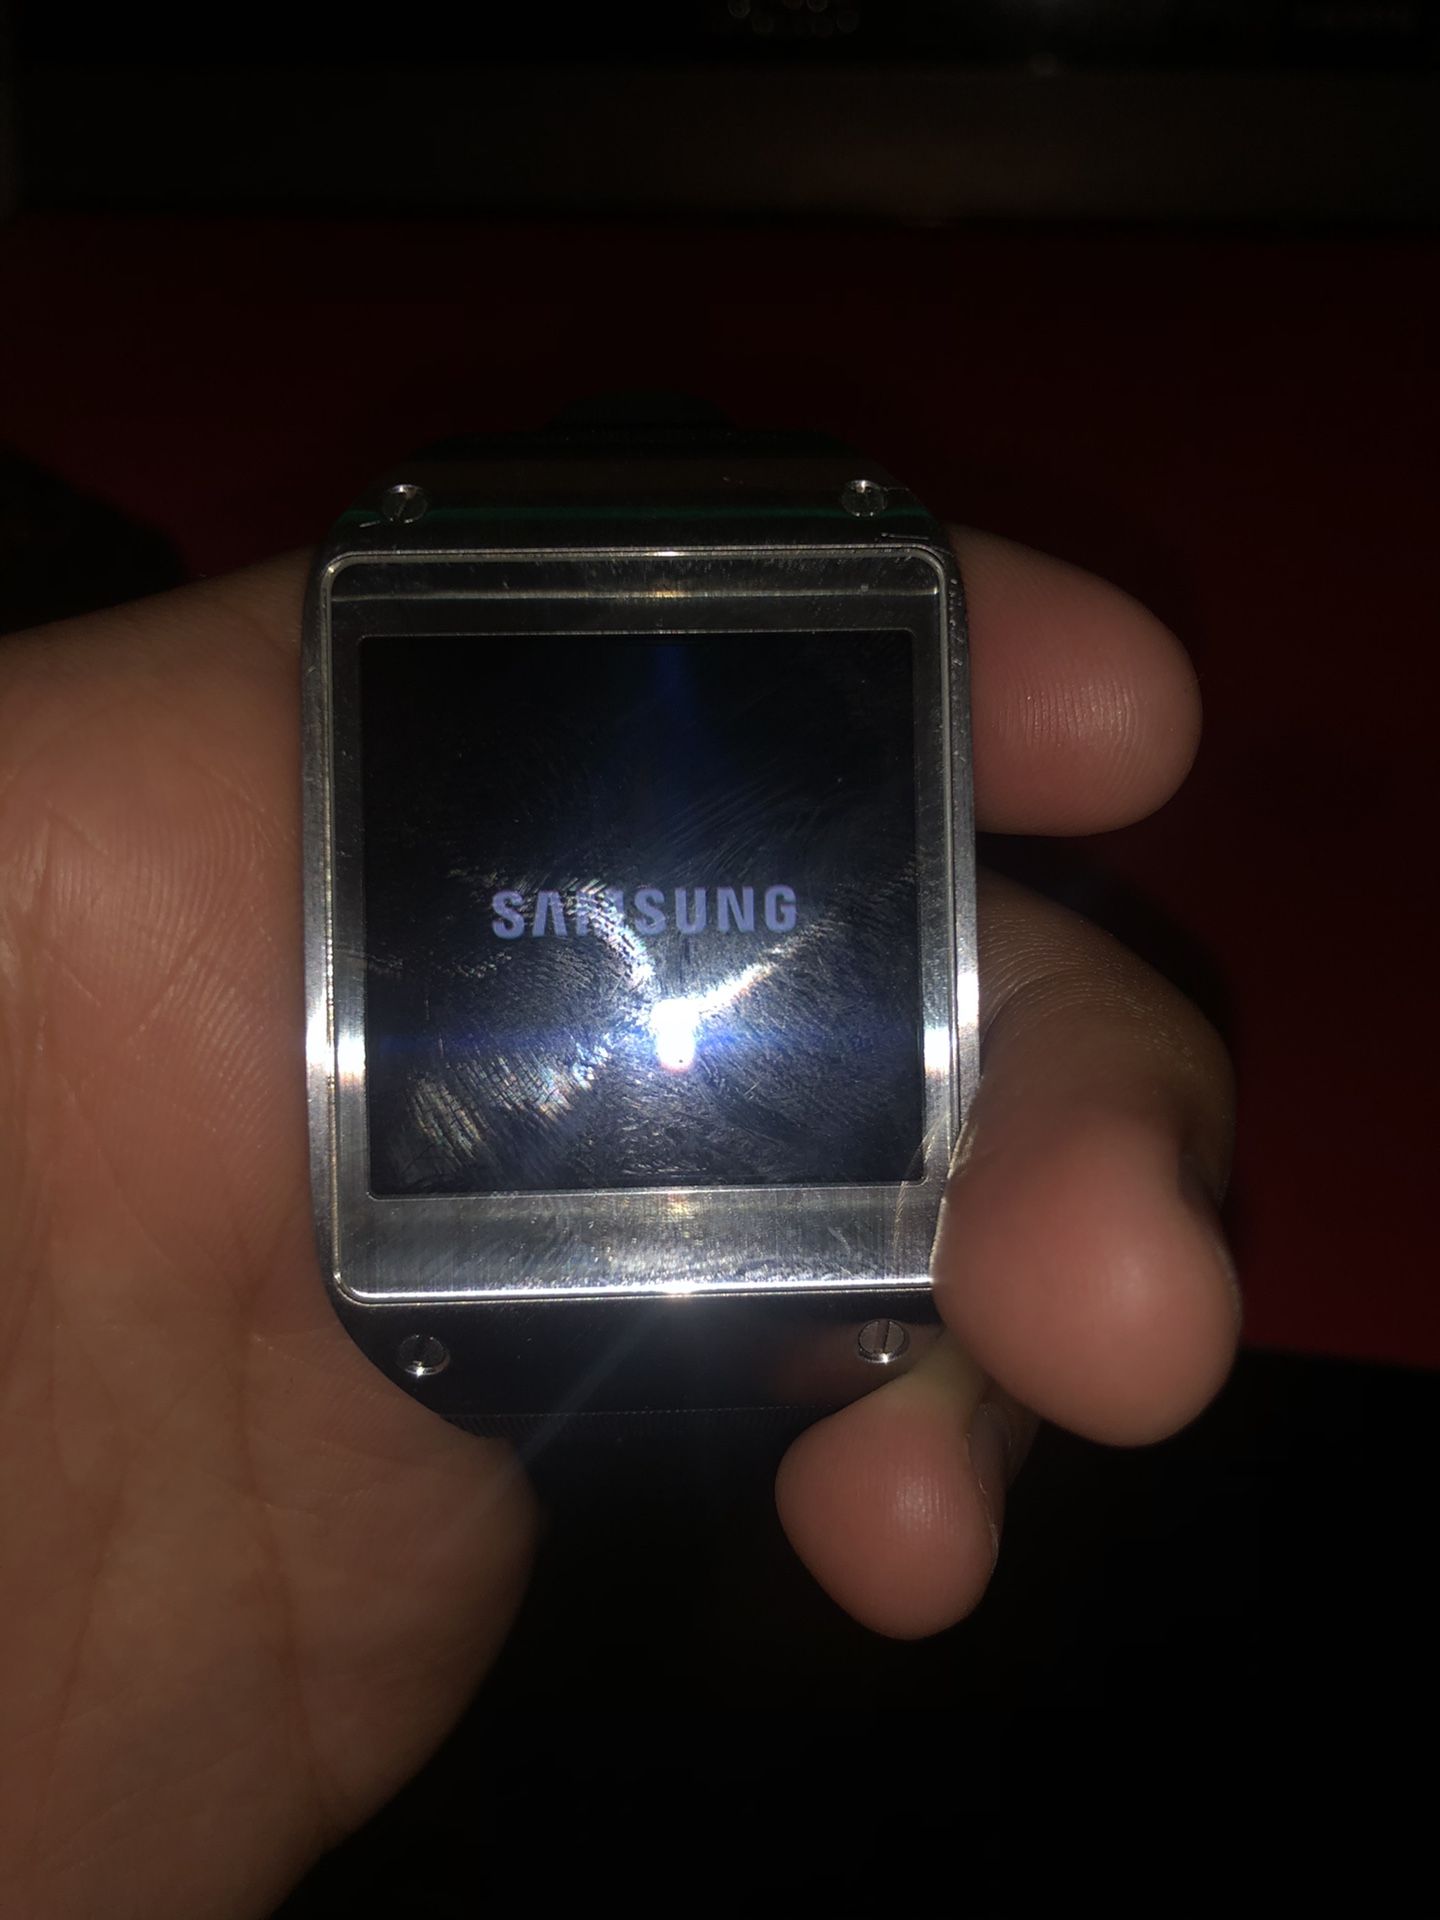 Samsung galaxy gear watch